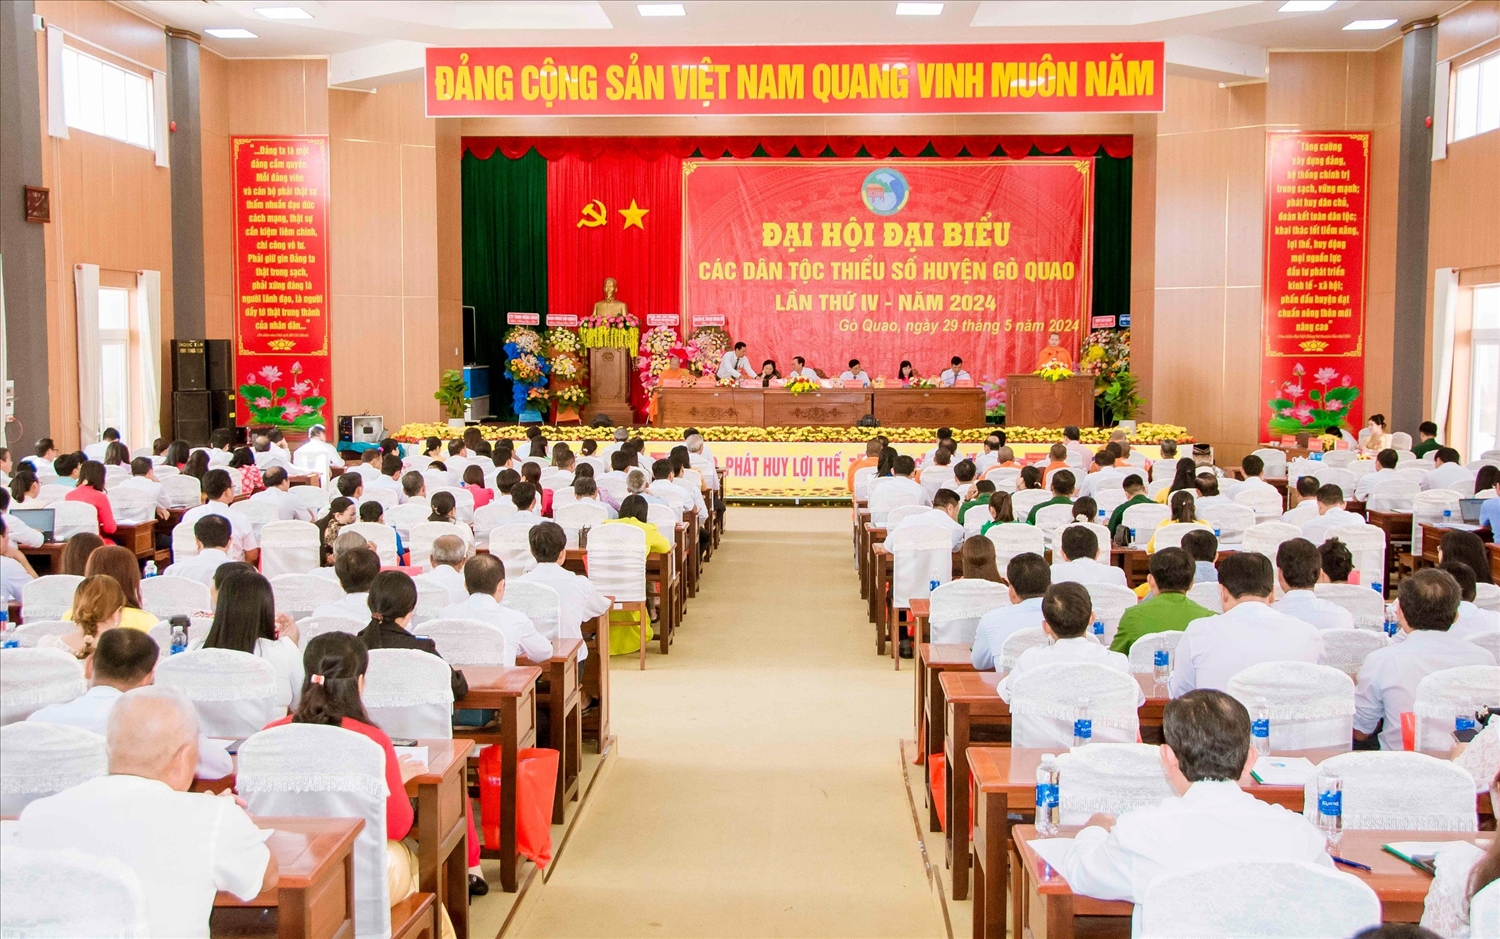 Ngoài 150 đại biểu chính thức, còn có hơn 100 đại biểu tham dự Đại hội điểm tại huyện Gò Quao để học tập rút kinh nghiệm khi tổ chức Đại hội tại đơn vị mình 